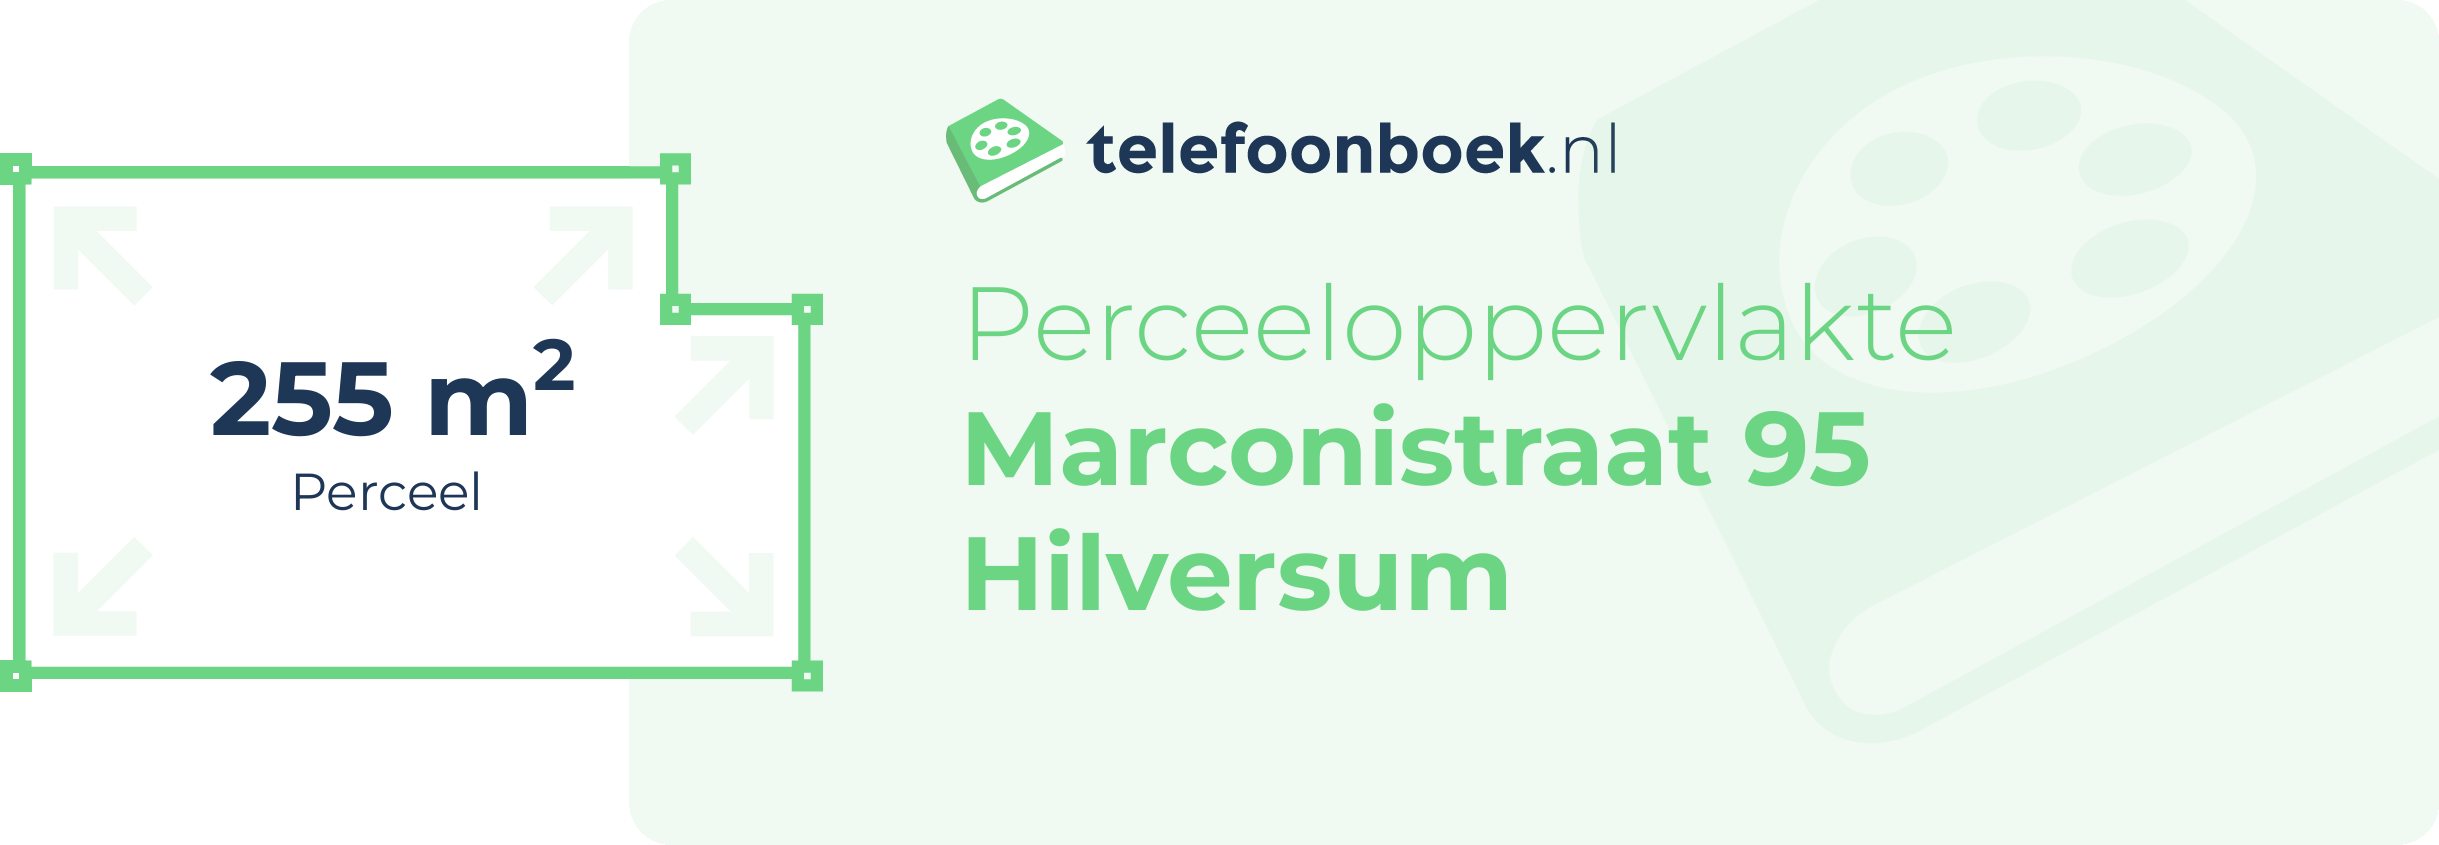 Perceeloppervlakte Marconistraat 95 Hilversum